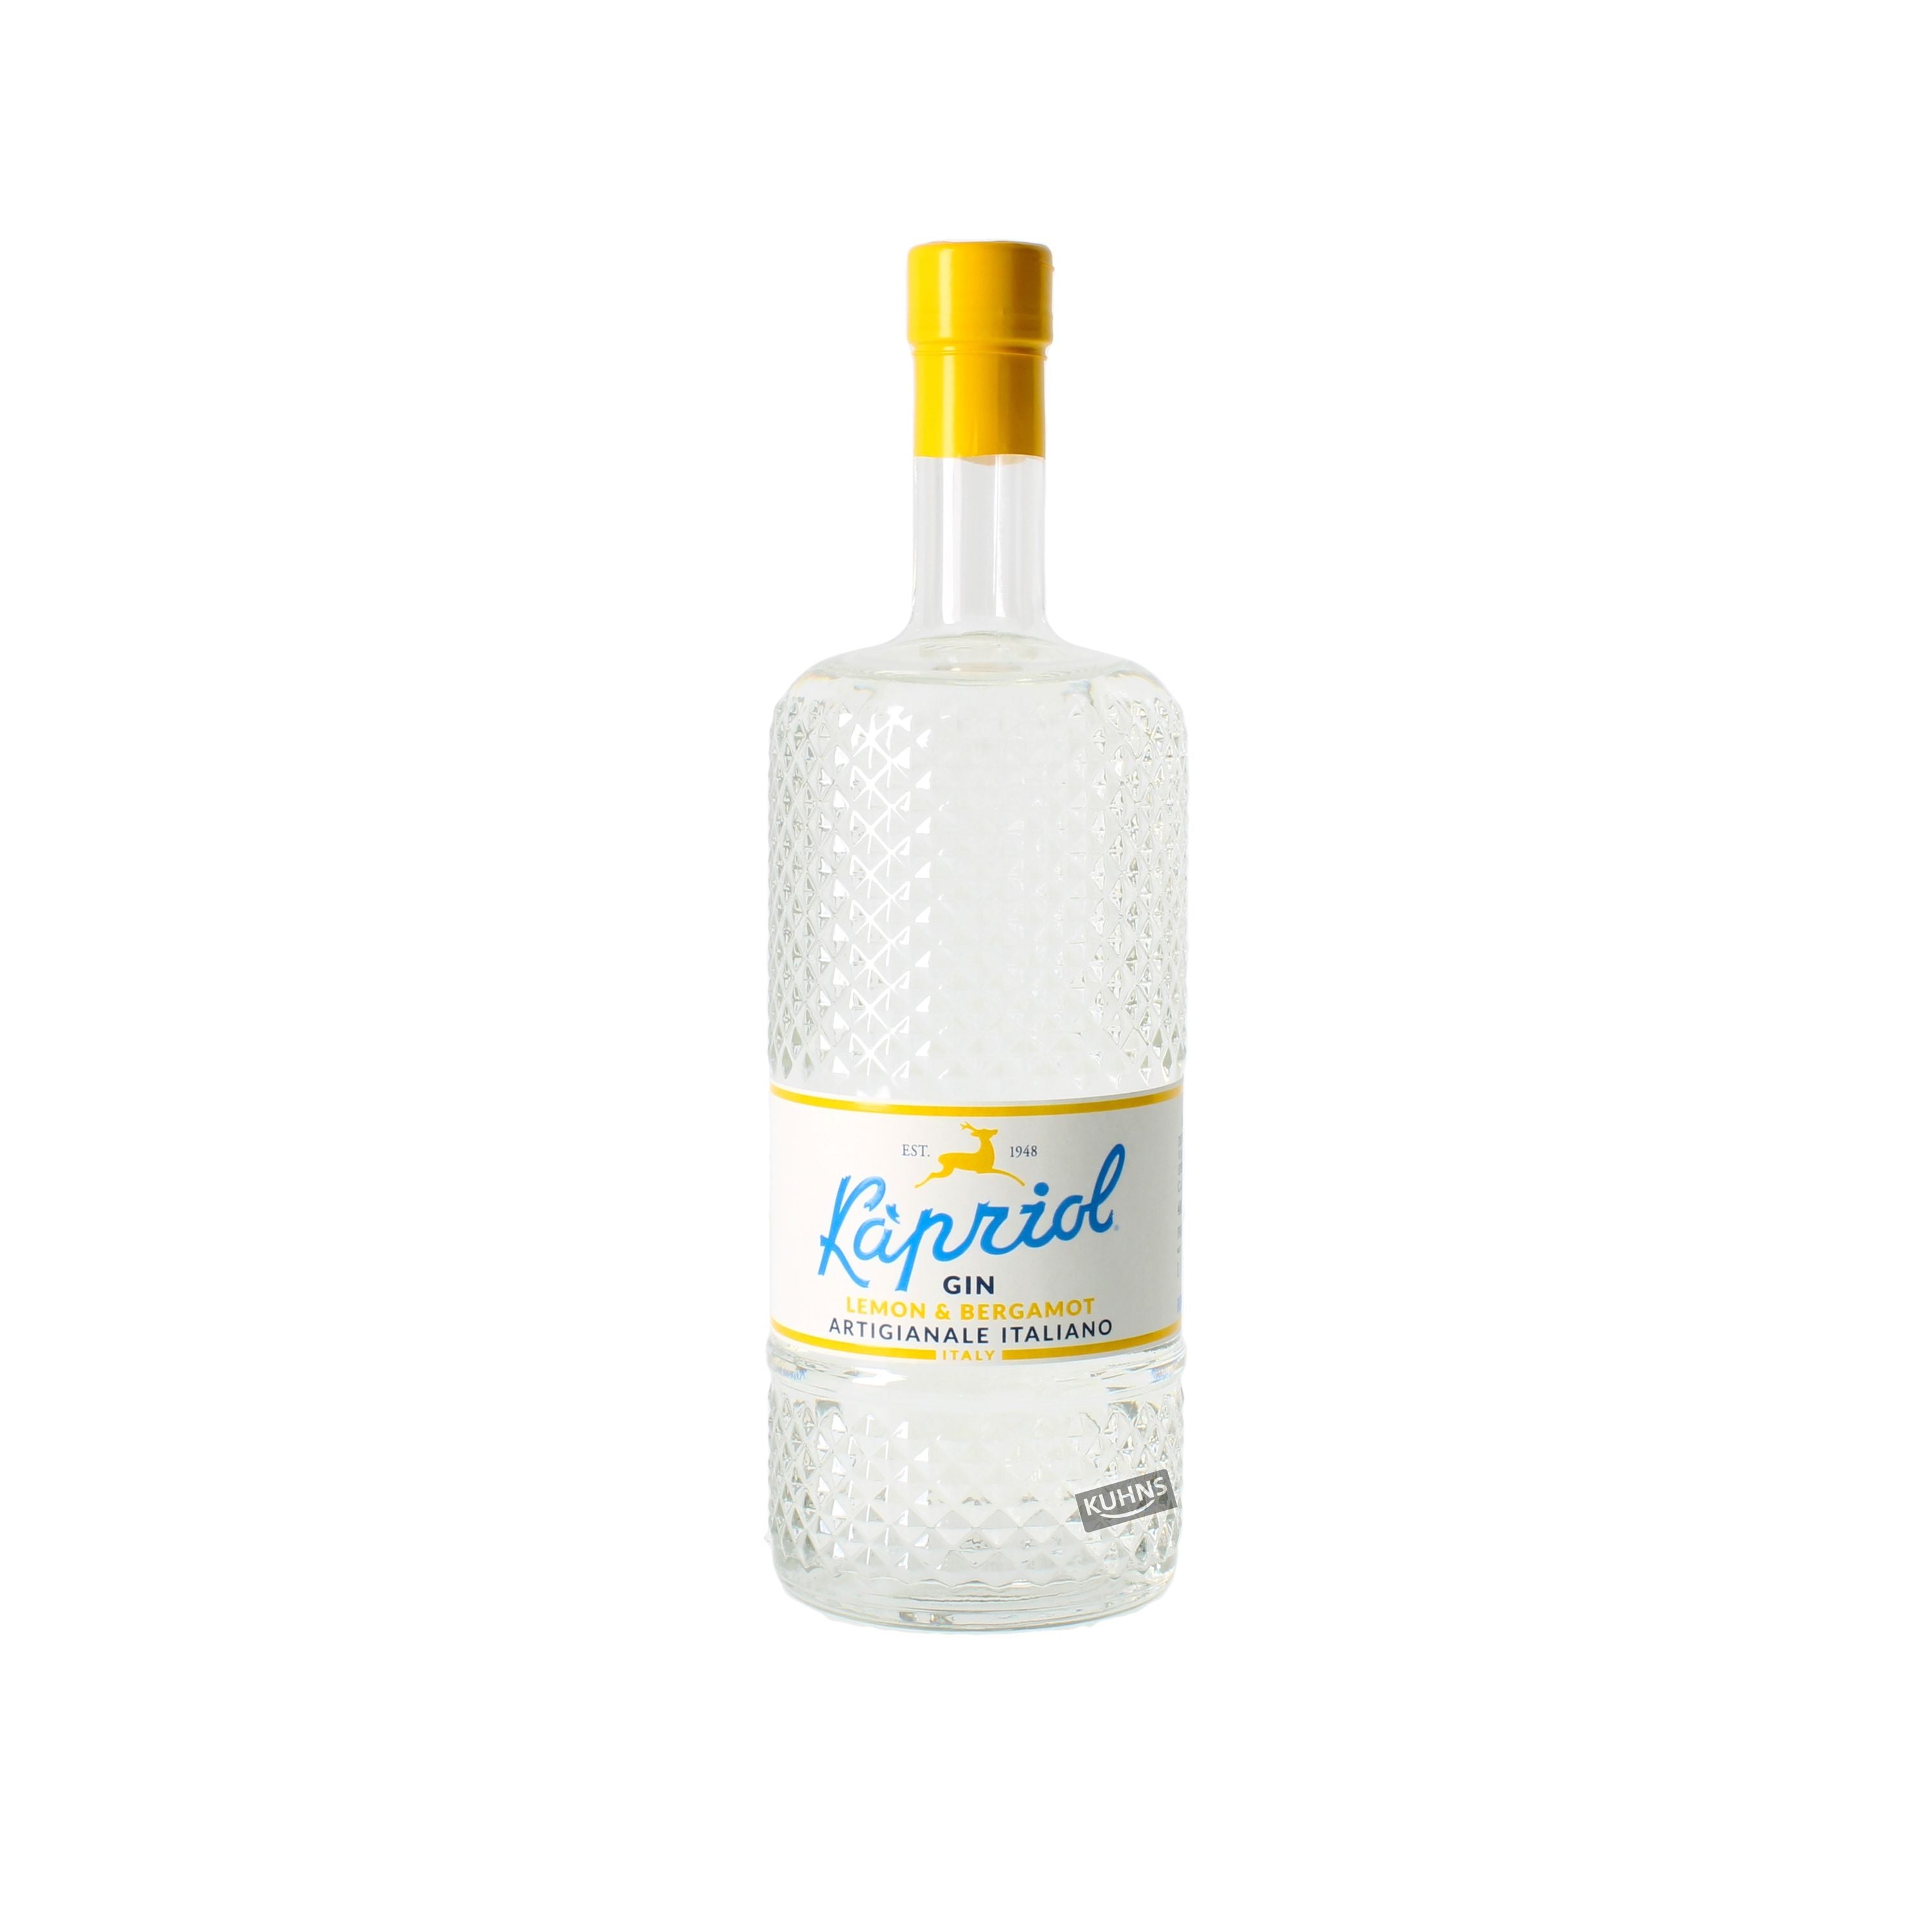 Kapriol Gin Lemon &amp; Bergamot 0.7l, alc. 40.7% Vol. Gin Italy